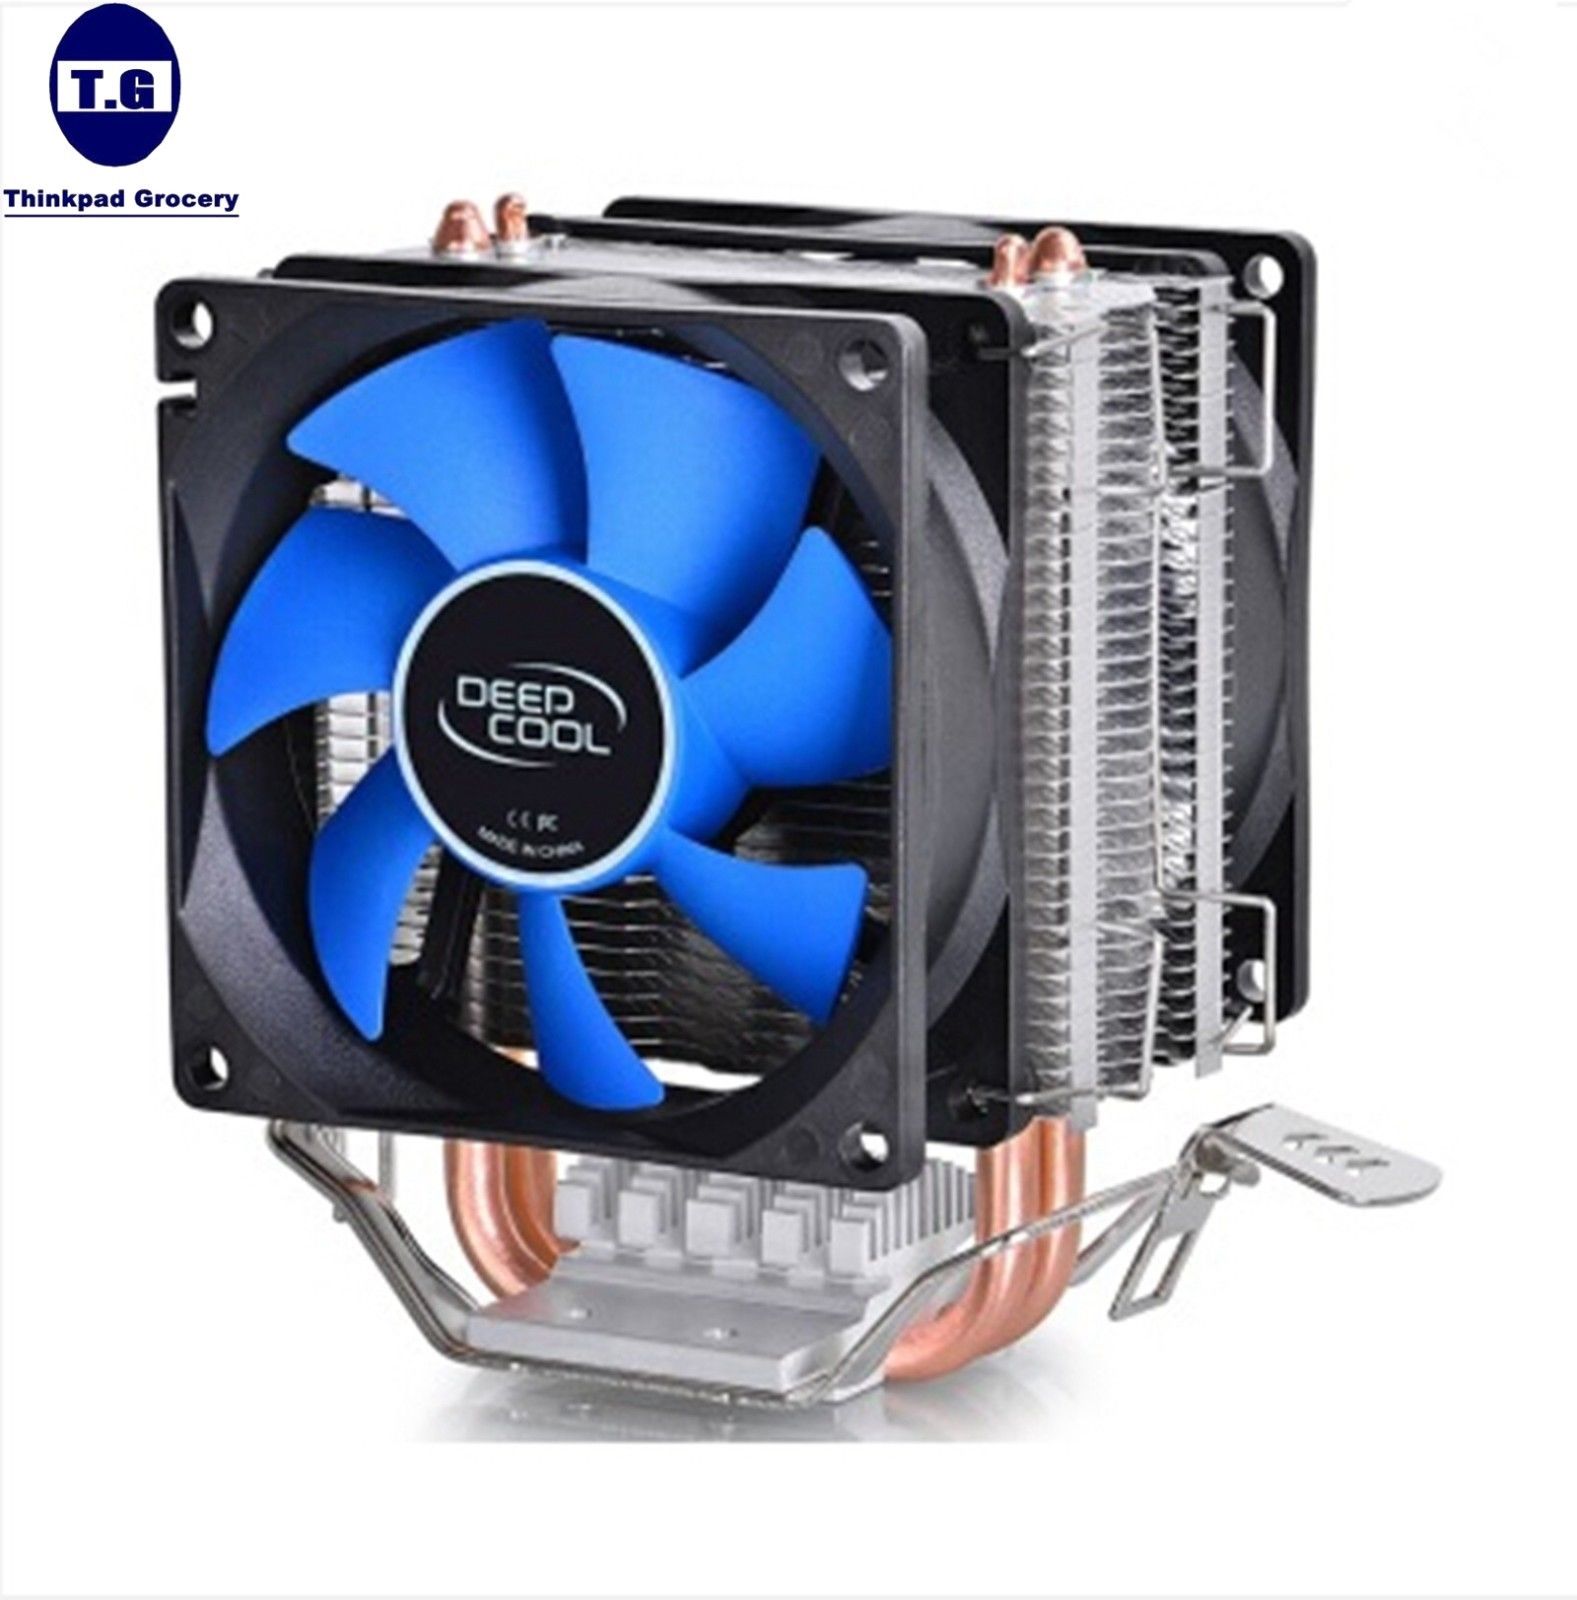 New Dual CPU Cooling fan with heatsink for AMD AM2+AM3+FM1 FM2 LGA 1156775